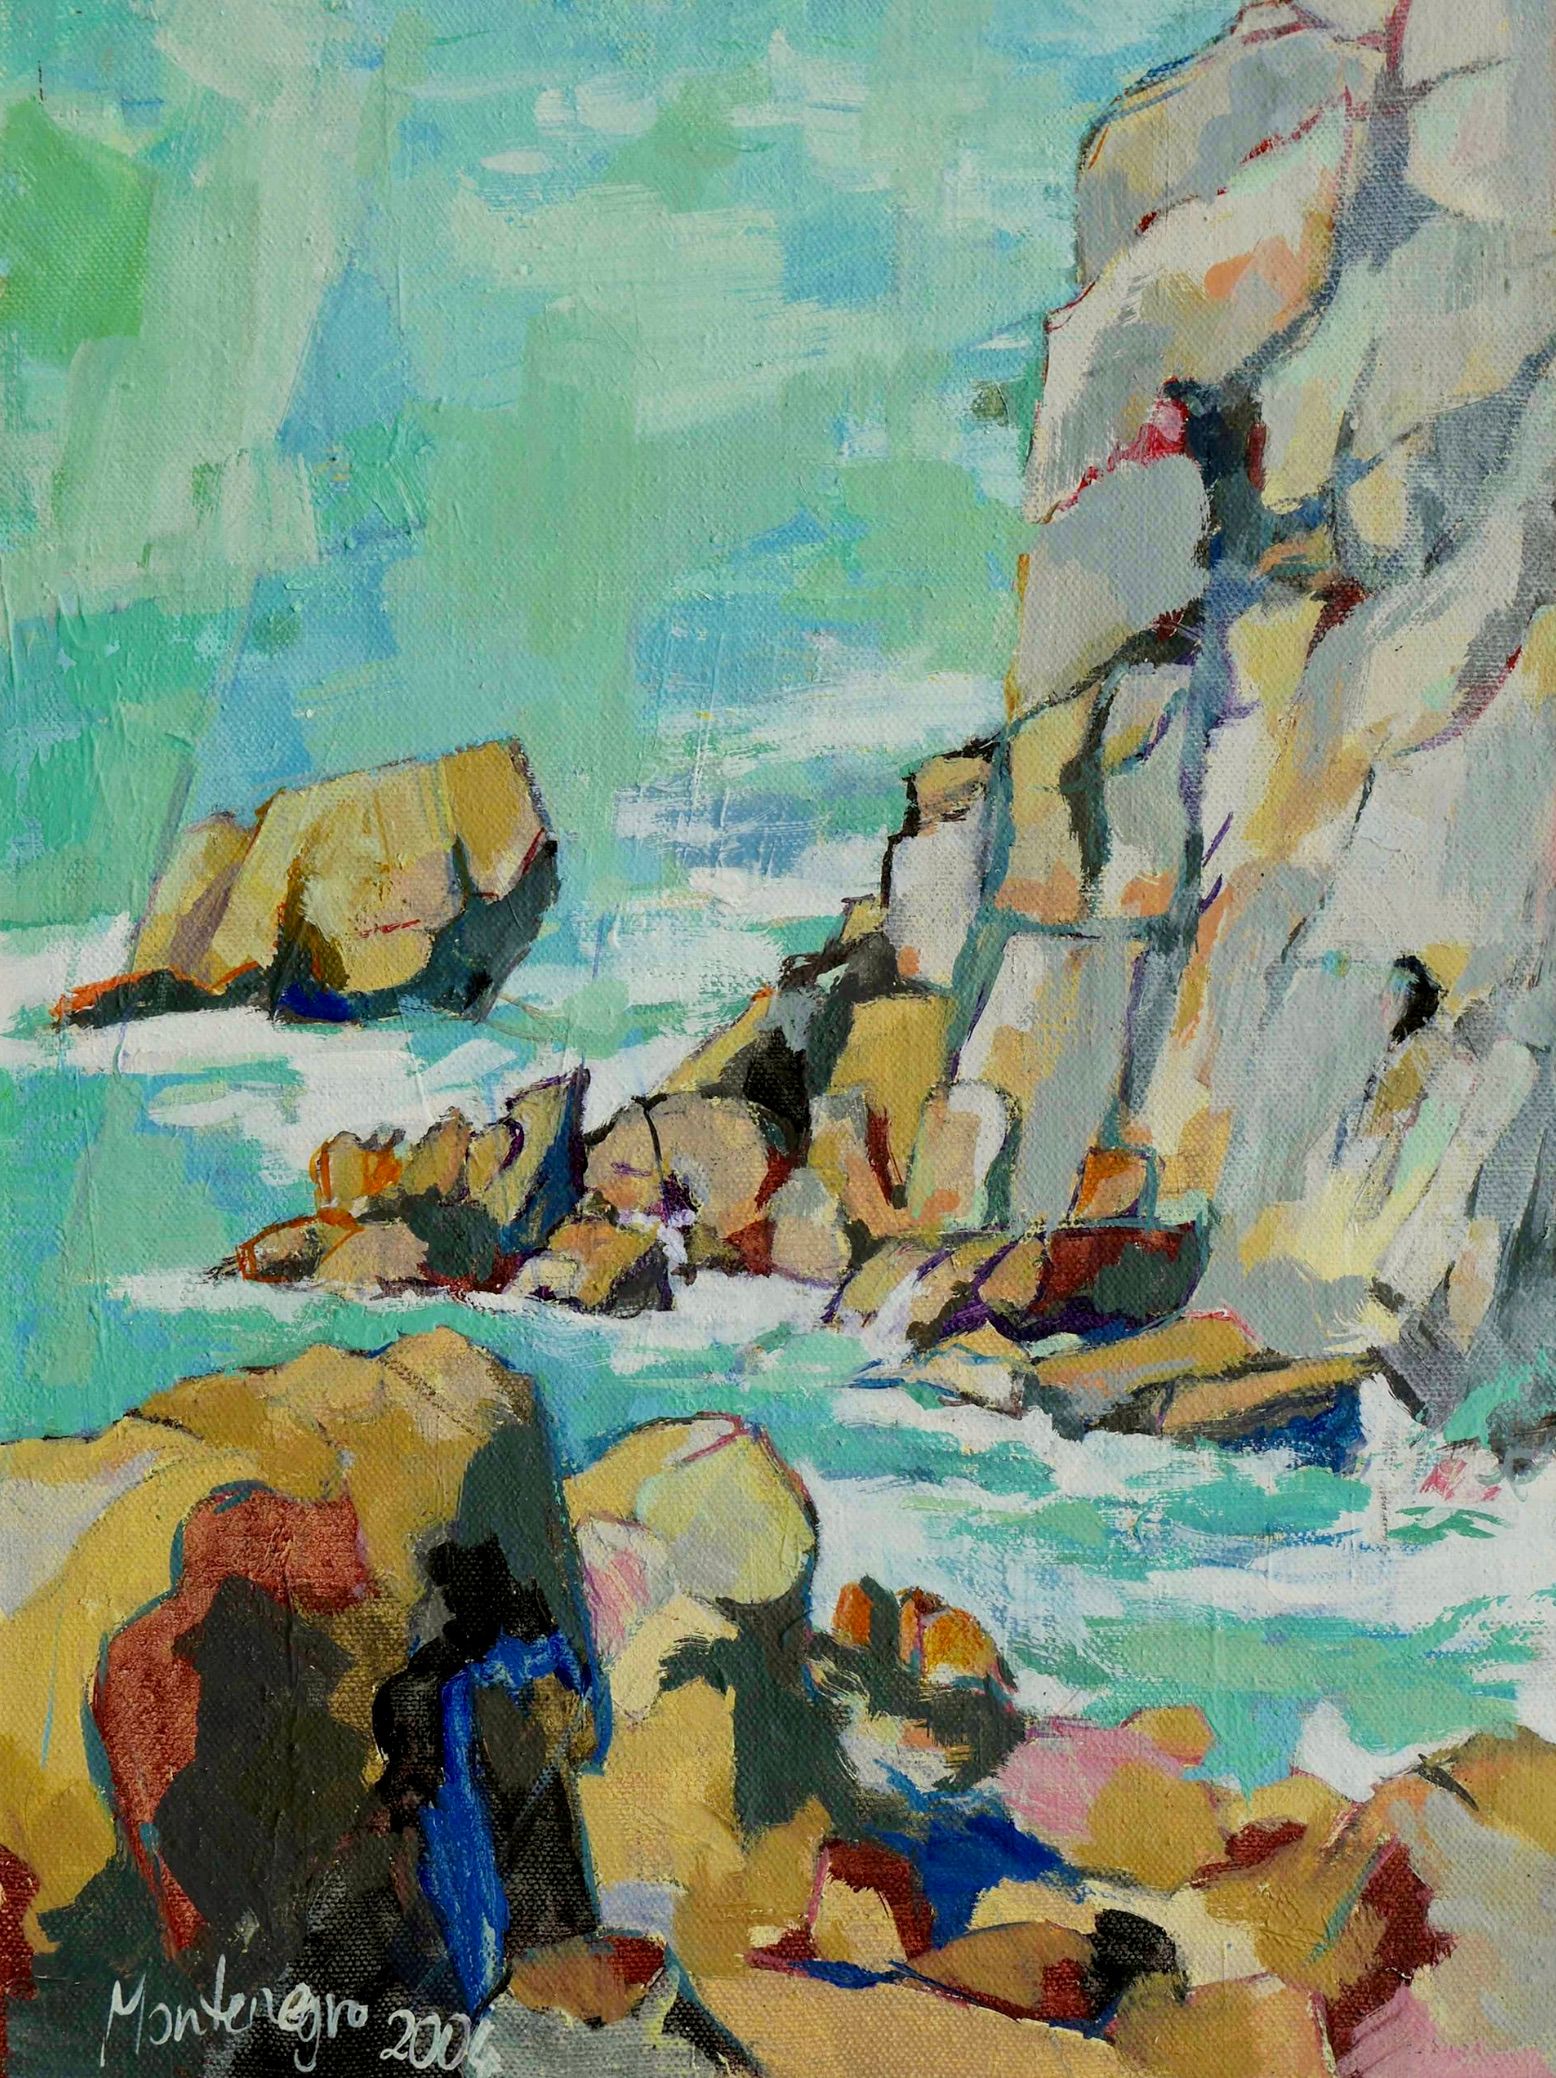 Miriam Montenegro pintura expresionista rocas de piedra junto al mar